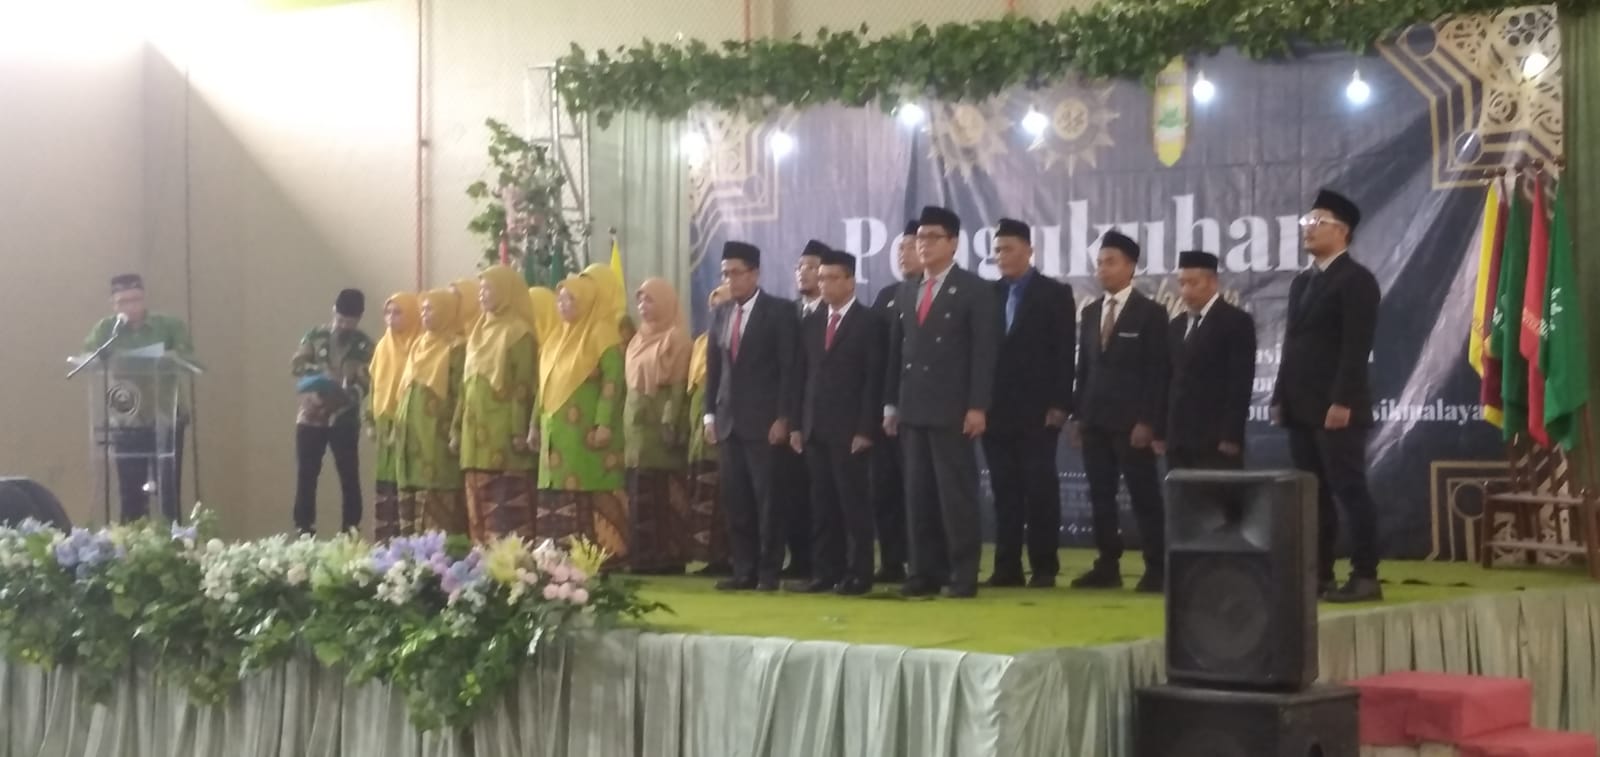 Muhammadiyah Kabupaten Tasikmalaya Membangun Masyarakat Islam Berkemajuan, Mandiri dan Sejahtera